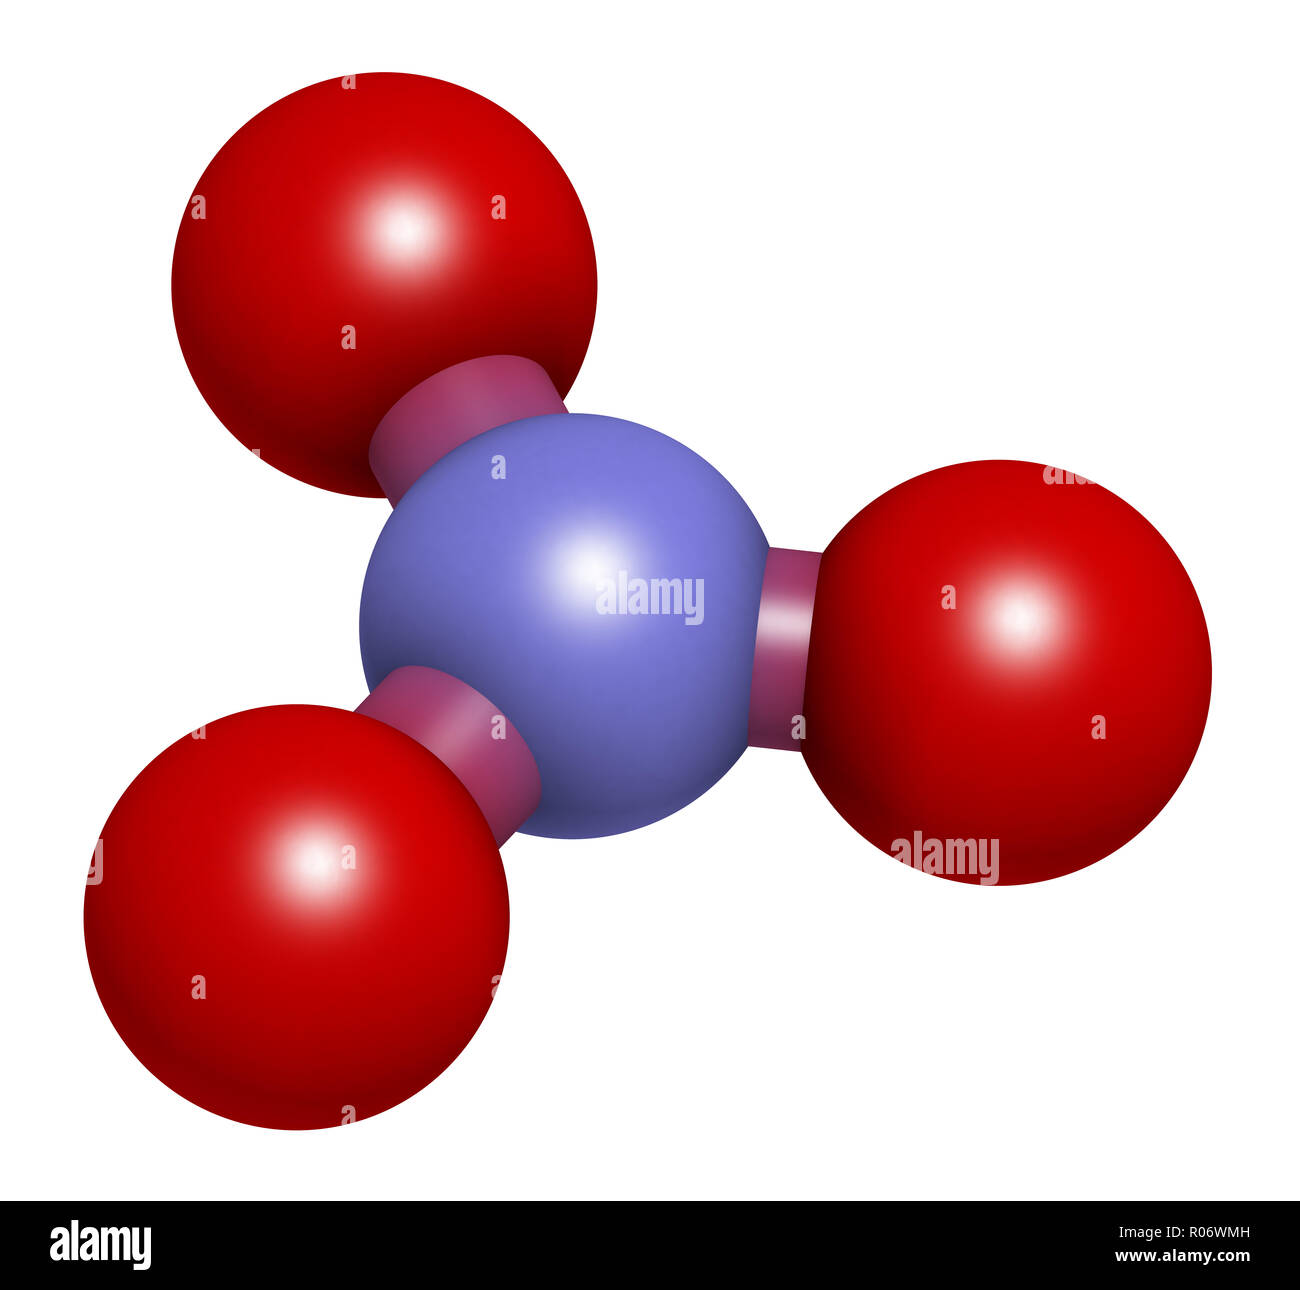 L'anion nitrate, la structure chimique. Le rendu 3D. Les atomes sont représentés comme des sphères classiques avec codage couleur : bleu (azote), oxygène (rouge). Banque D'Images